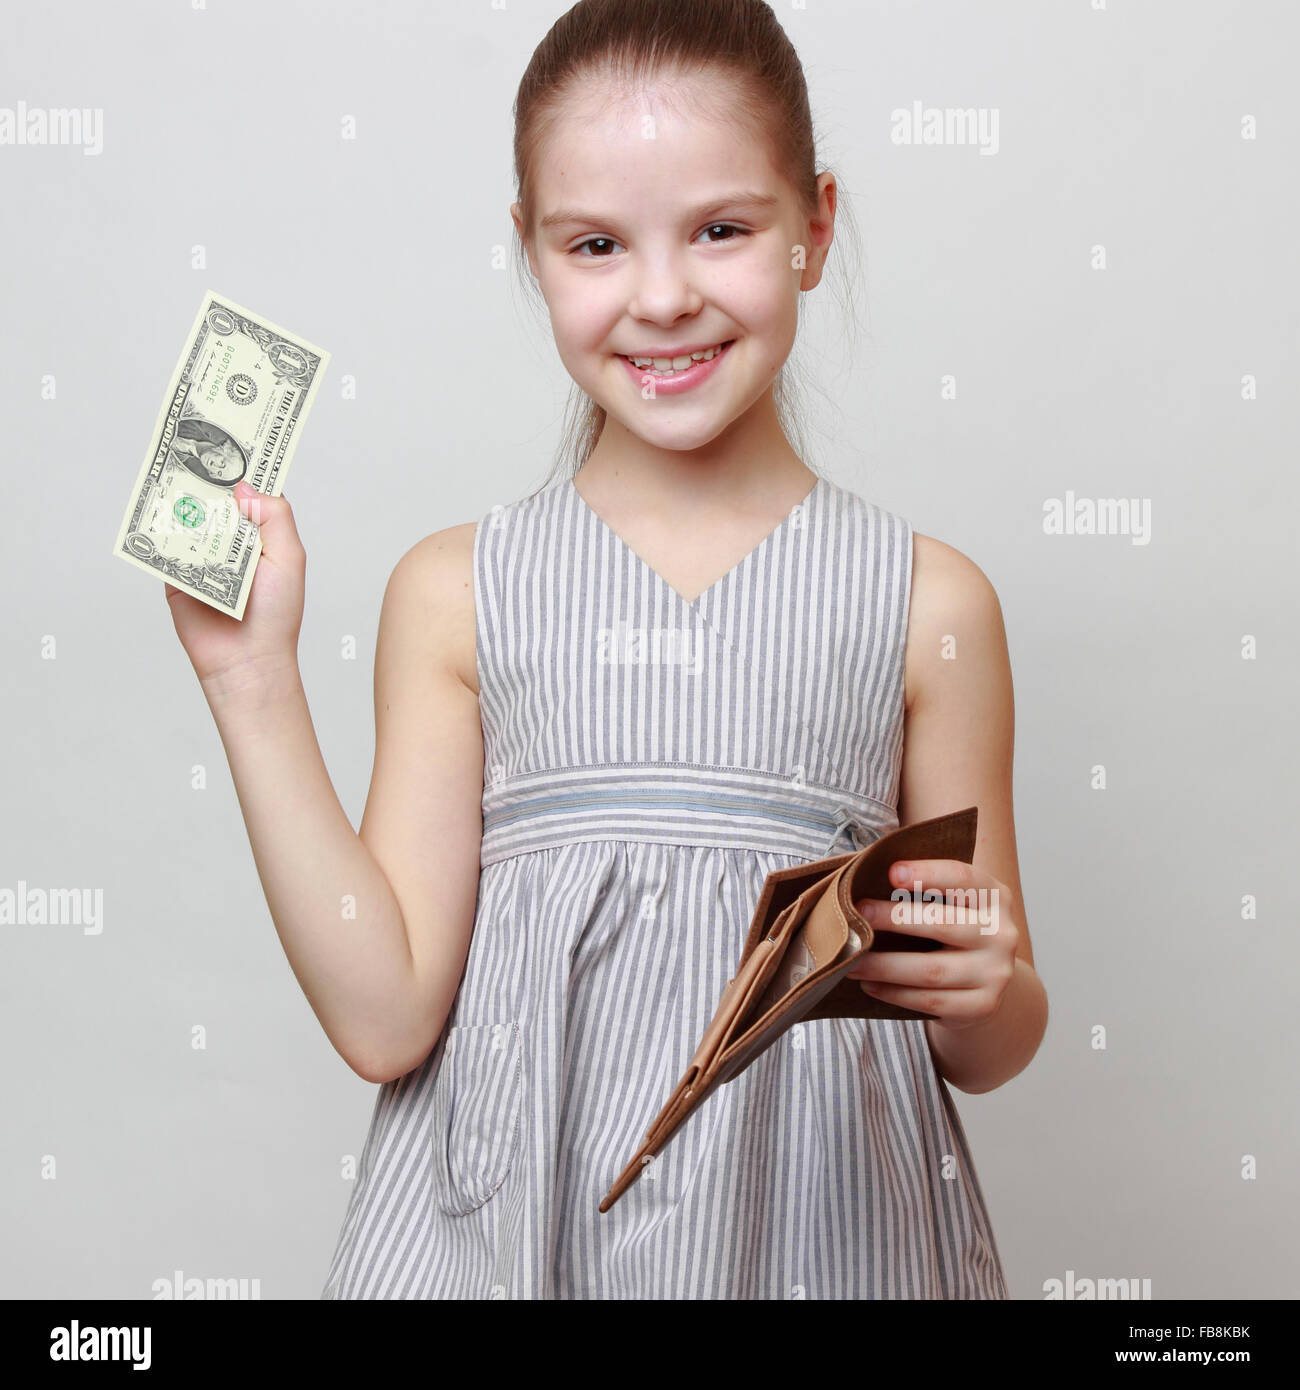 Wunderschönes kleines Mädchen mit Bargeld US-Dollar Stockfoto